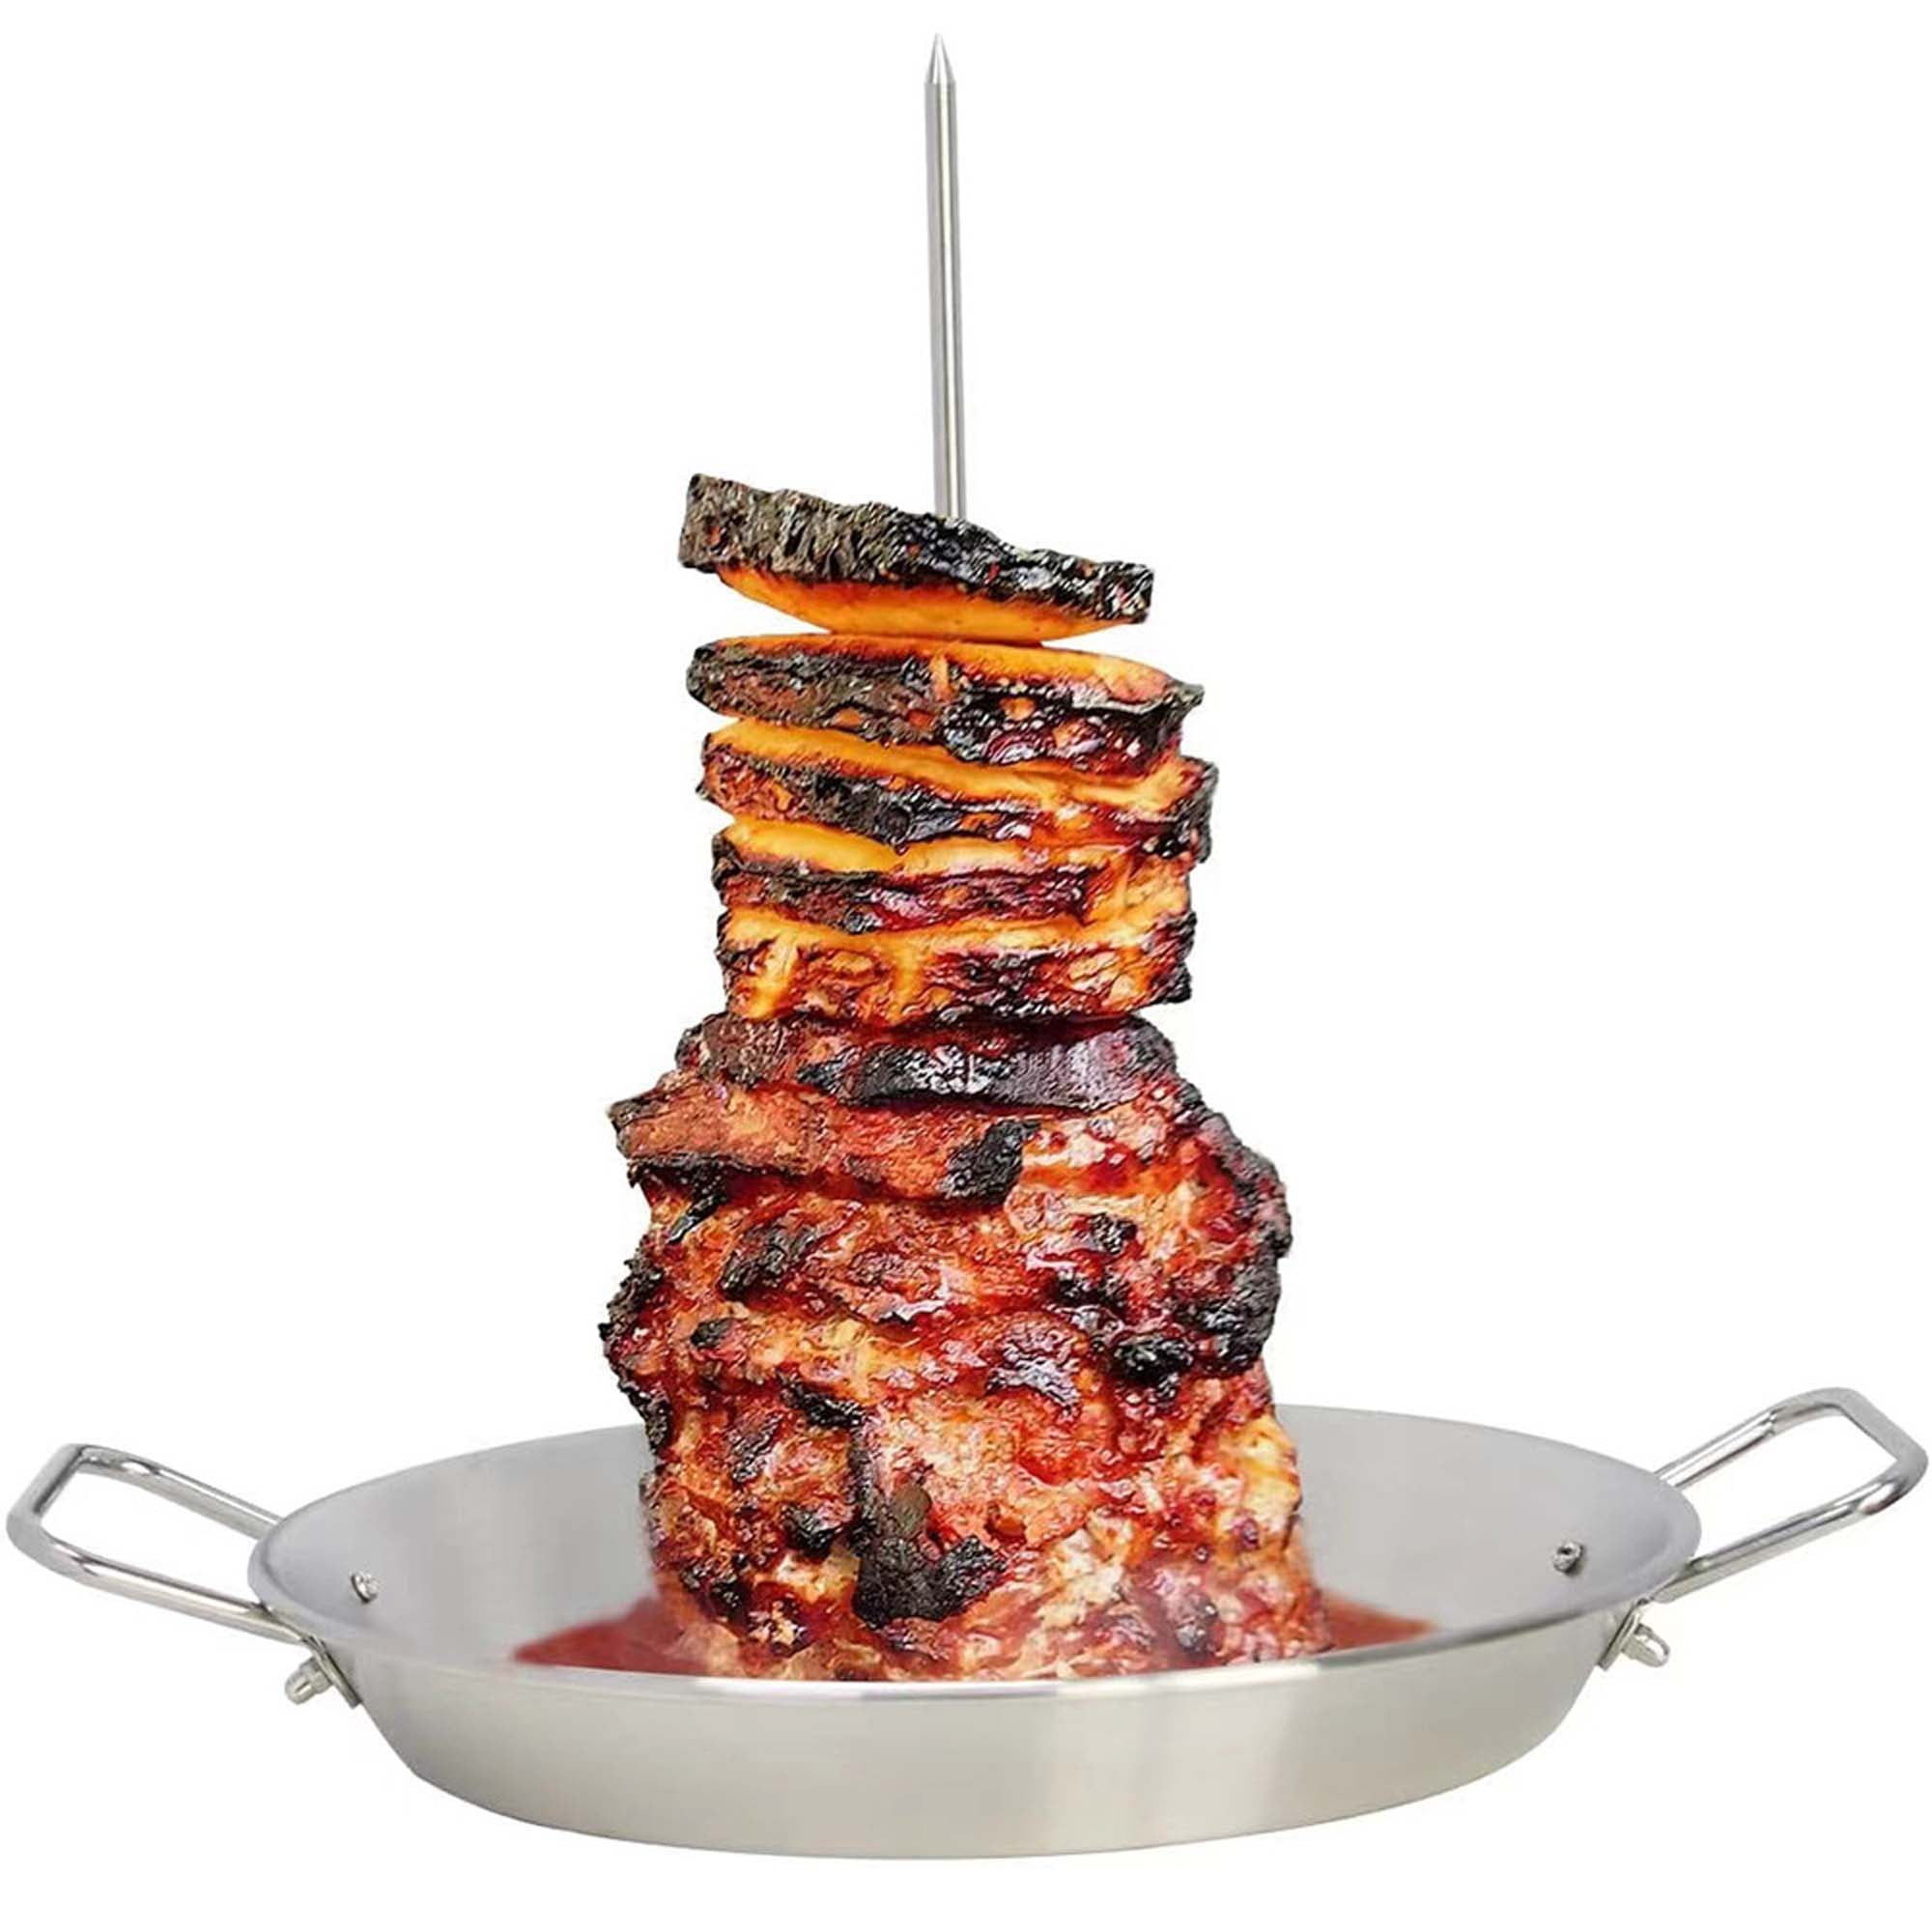 Skewered Shrimp Al Pastor Recipe - Over The Fire Cooking